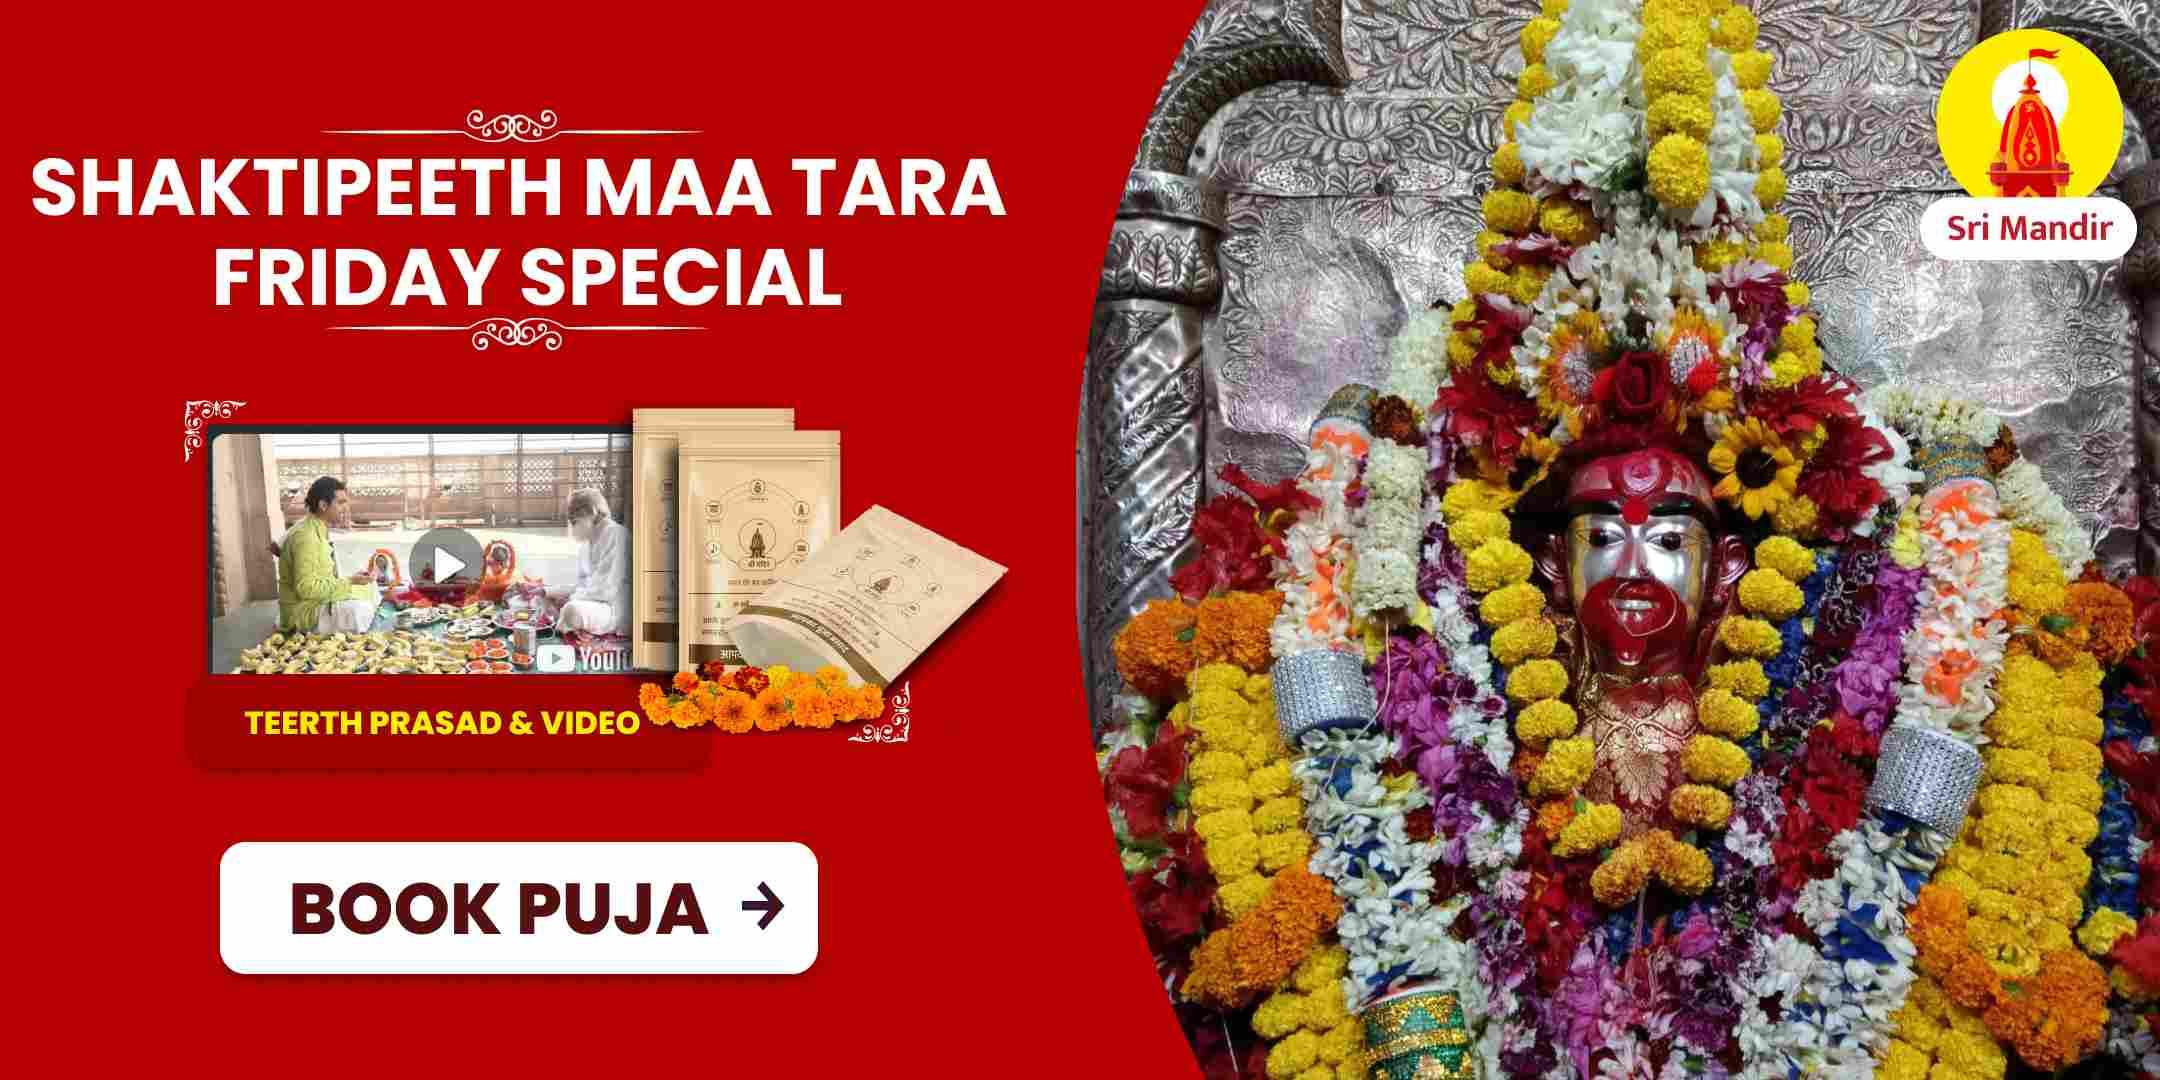  Shaktipeeth Friday Special Maha Vidya Tara Siddha Maha Yagya and Ashtottara Namavali for Protection from Adversities